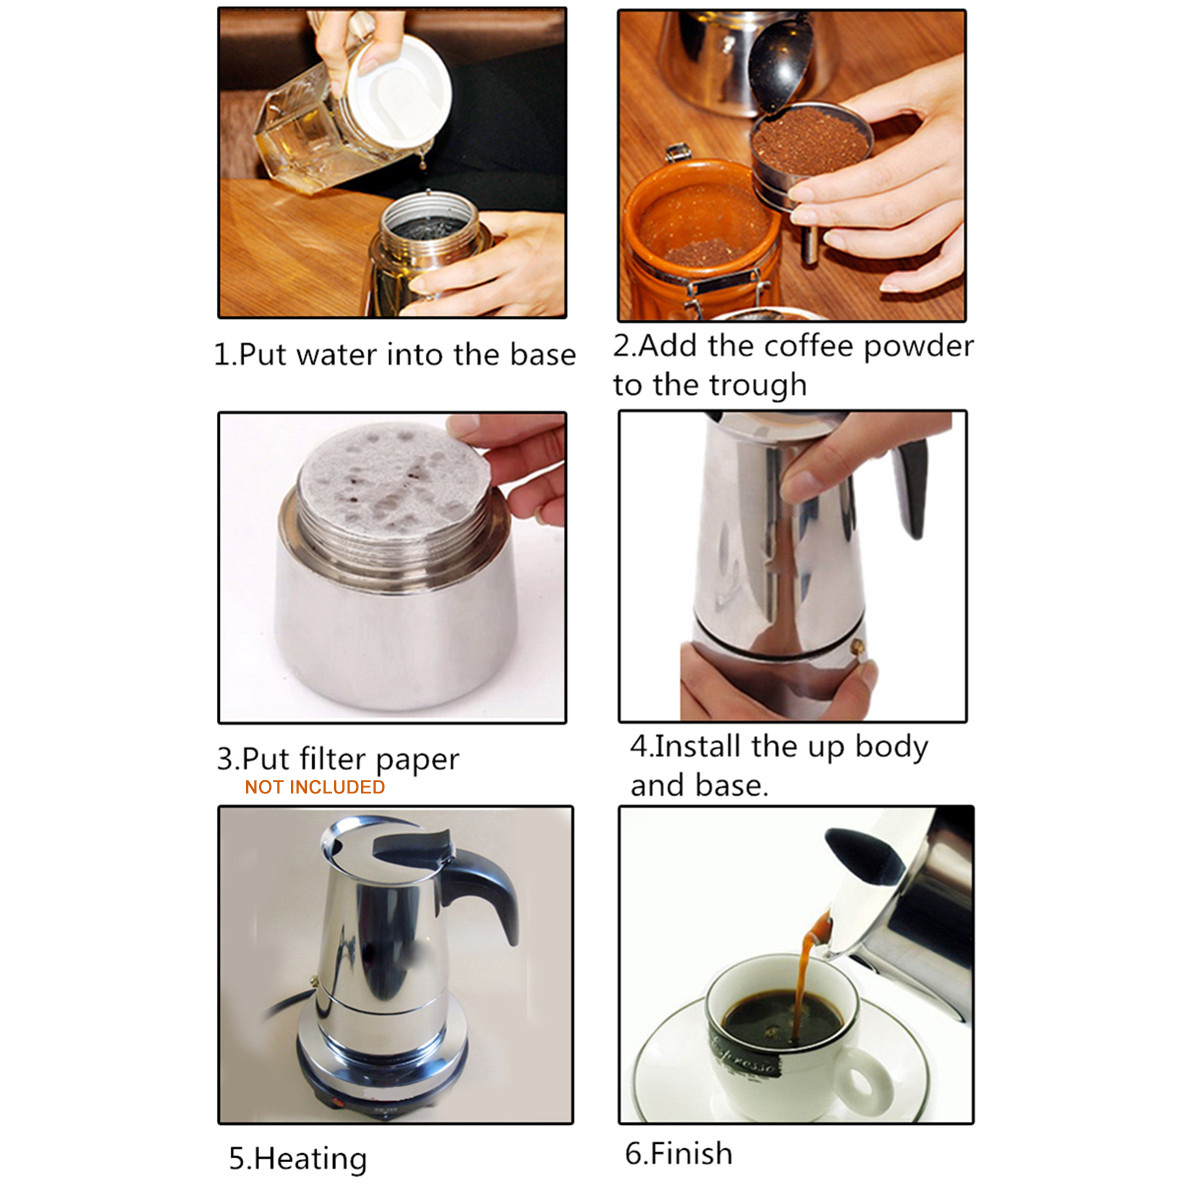 220V 500W 450ml Portable Coffee Espresso Pot Maker & Electric Stove Home Kitchen Tools 67